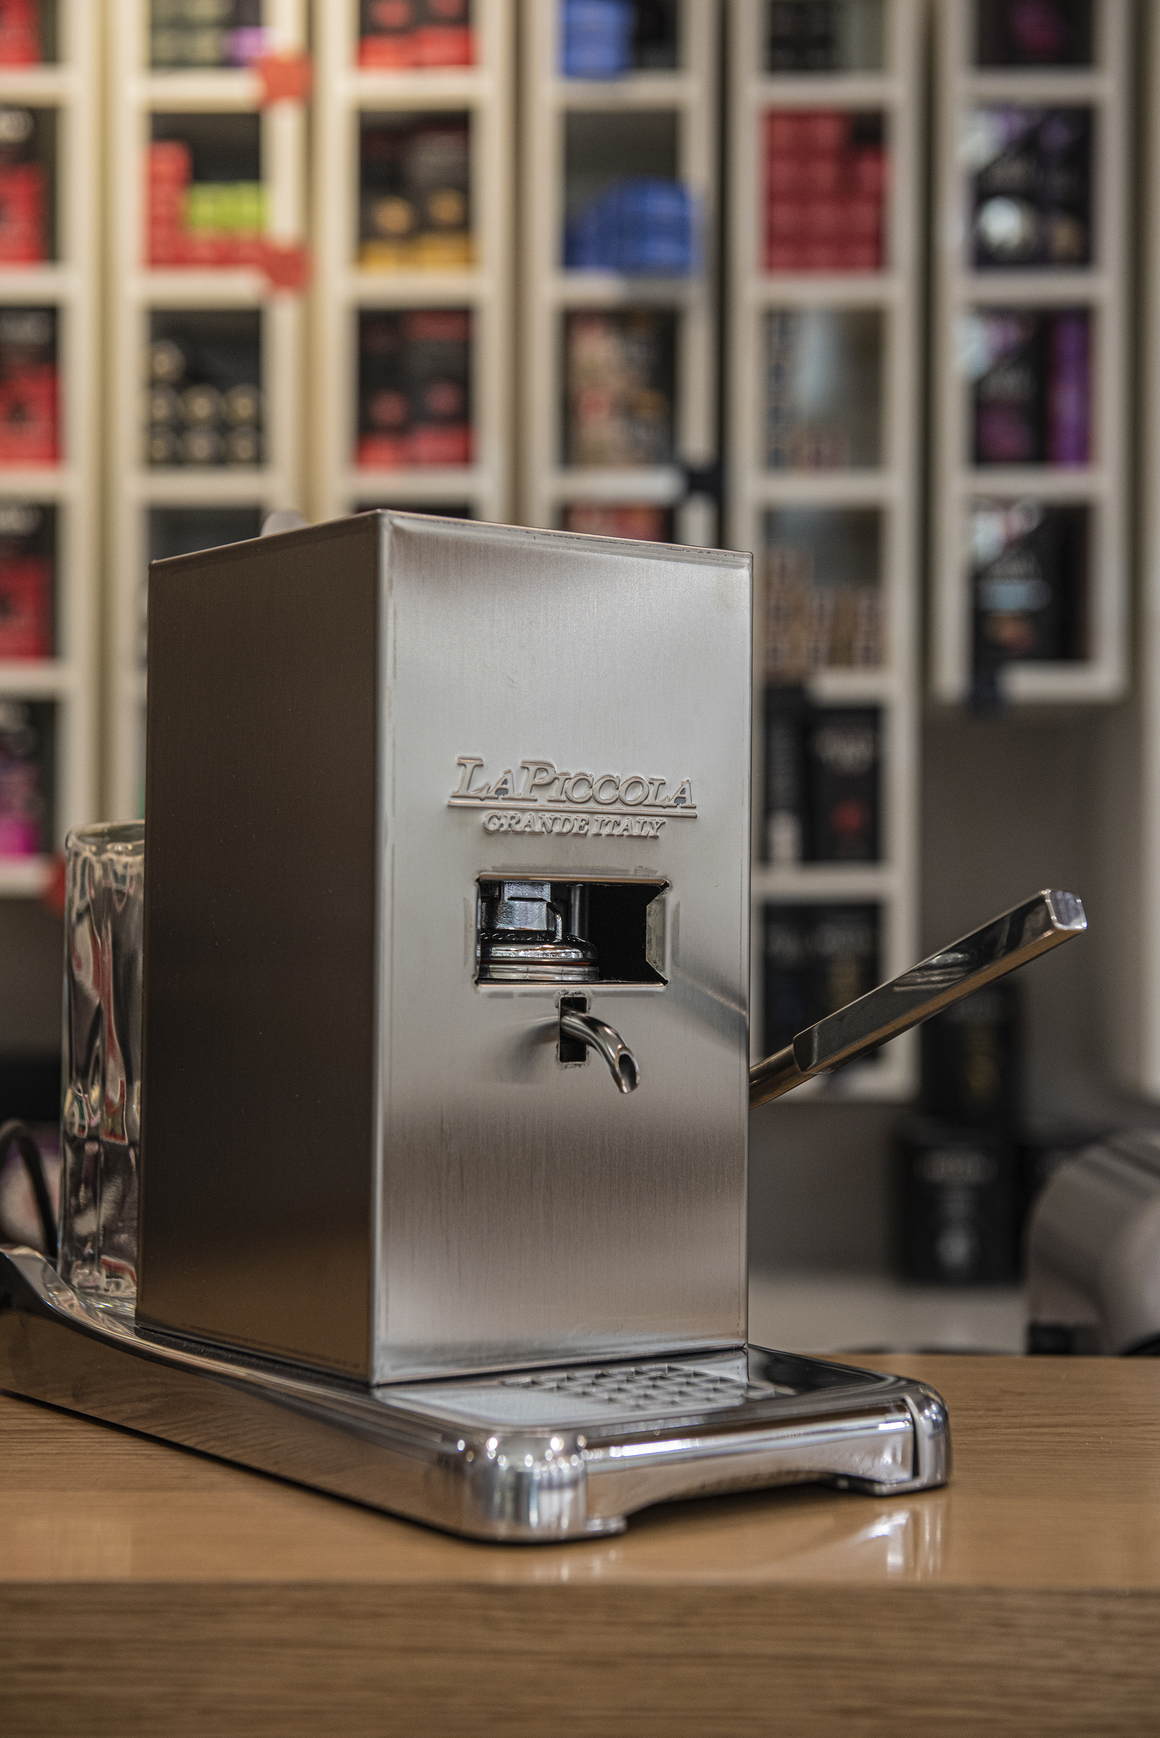 <p>La Piccola e една от най-компактните качествени еспресо машини на пазара. Изработена от безвредни материали - иноксов корпус, сребърен нагревател и контейнер за вода от стъкло.  Работи с пакетирано в хартиени монодози кафе. Подходяща е както за домашна употреба, така и за яхти, каравани и кемпери. </p>
